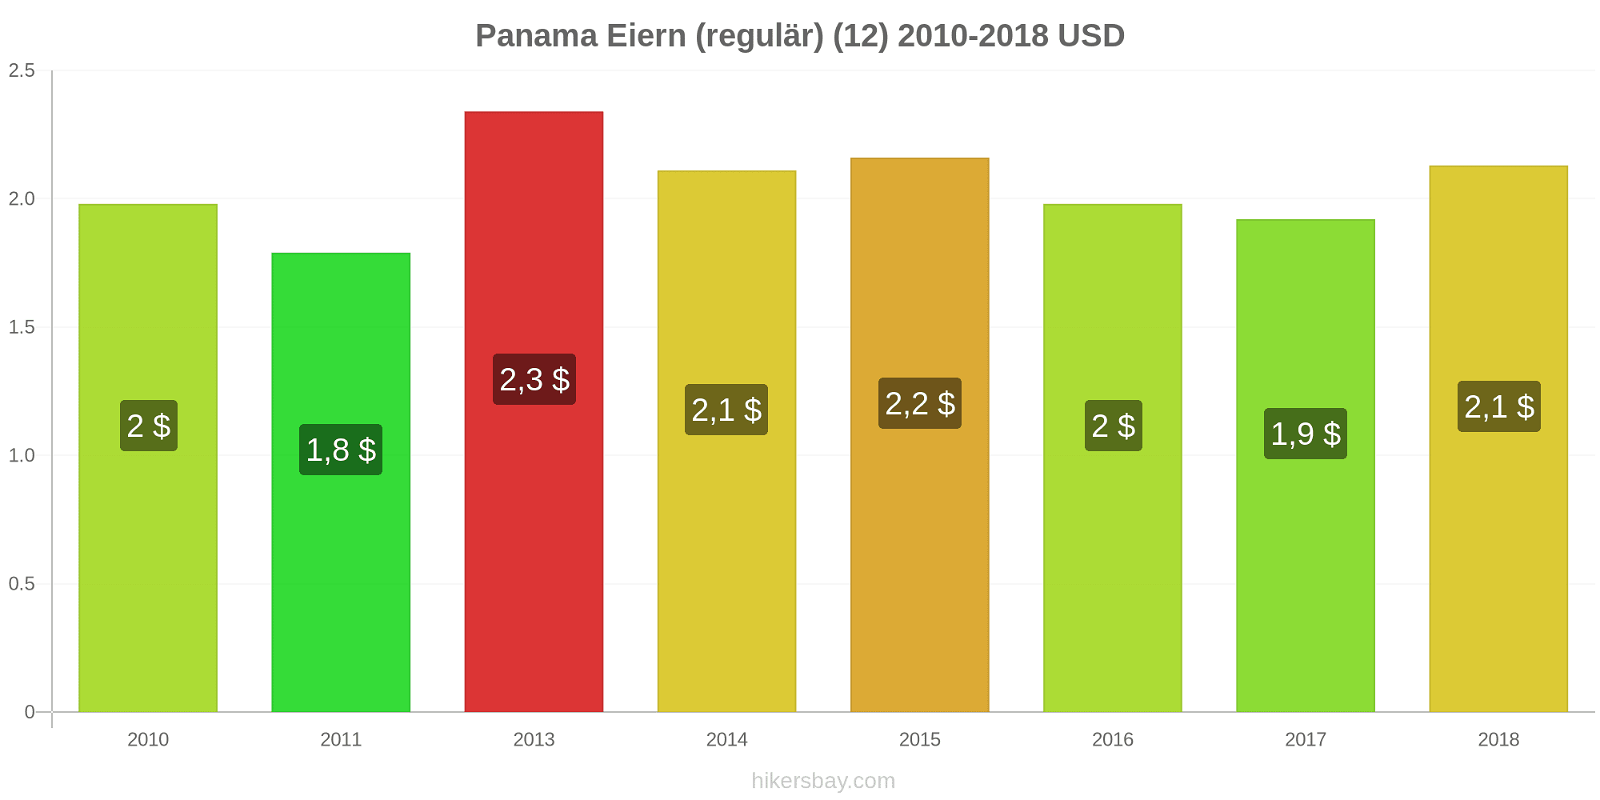 Panama Preisänderungen Eier (regelmäßig) (12) hikersbay.com